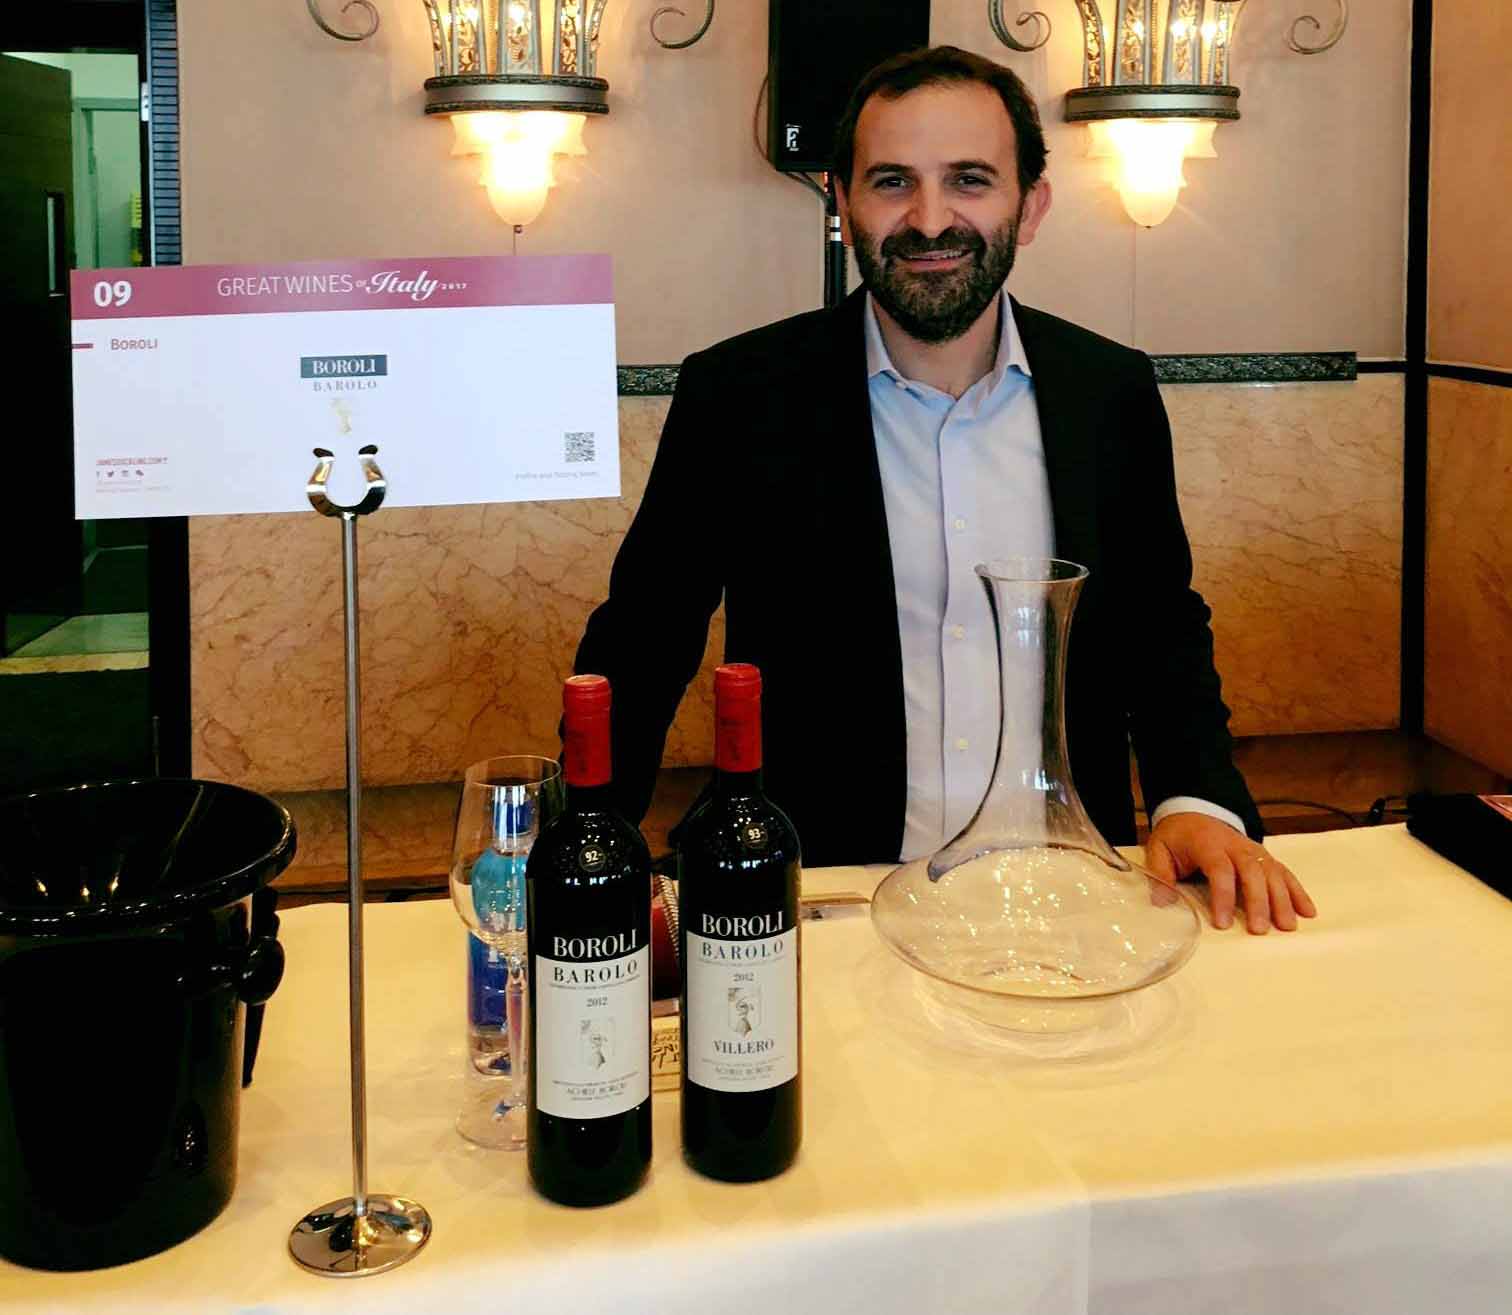 Premio per Boroli Great wine of italy 2017